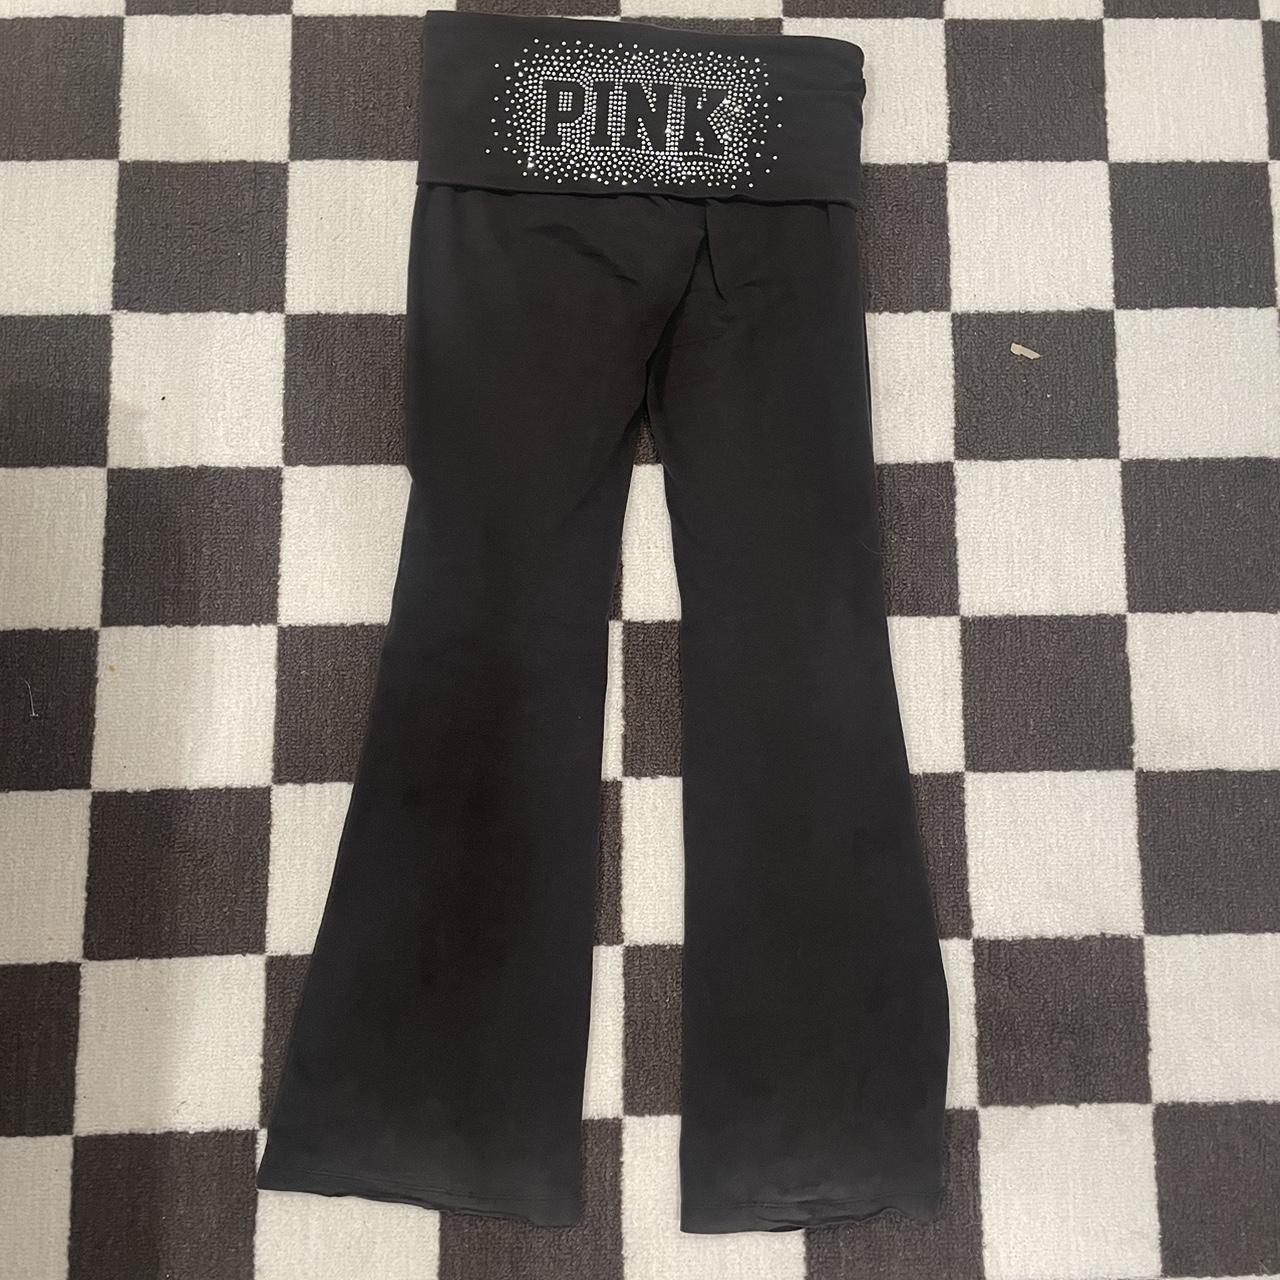 Victoria Secret Pink y2k Fold over Yoga Pants -... - Depop